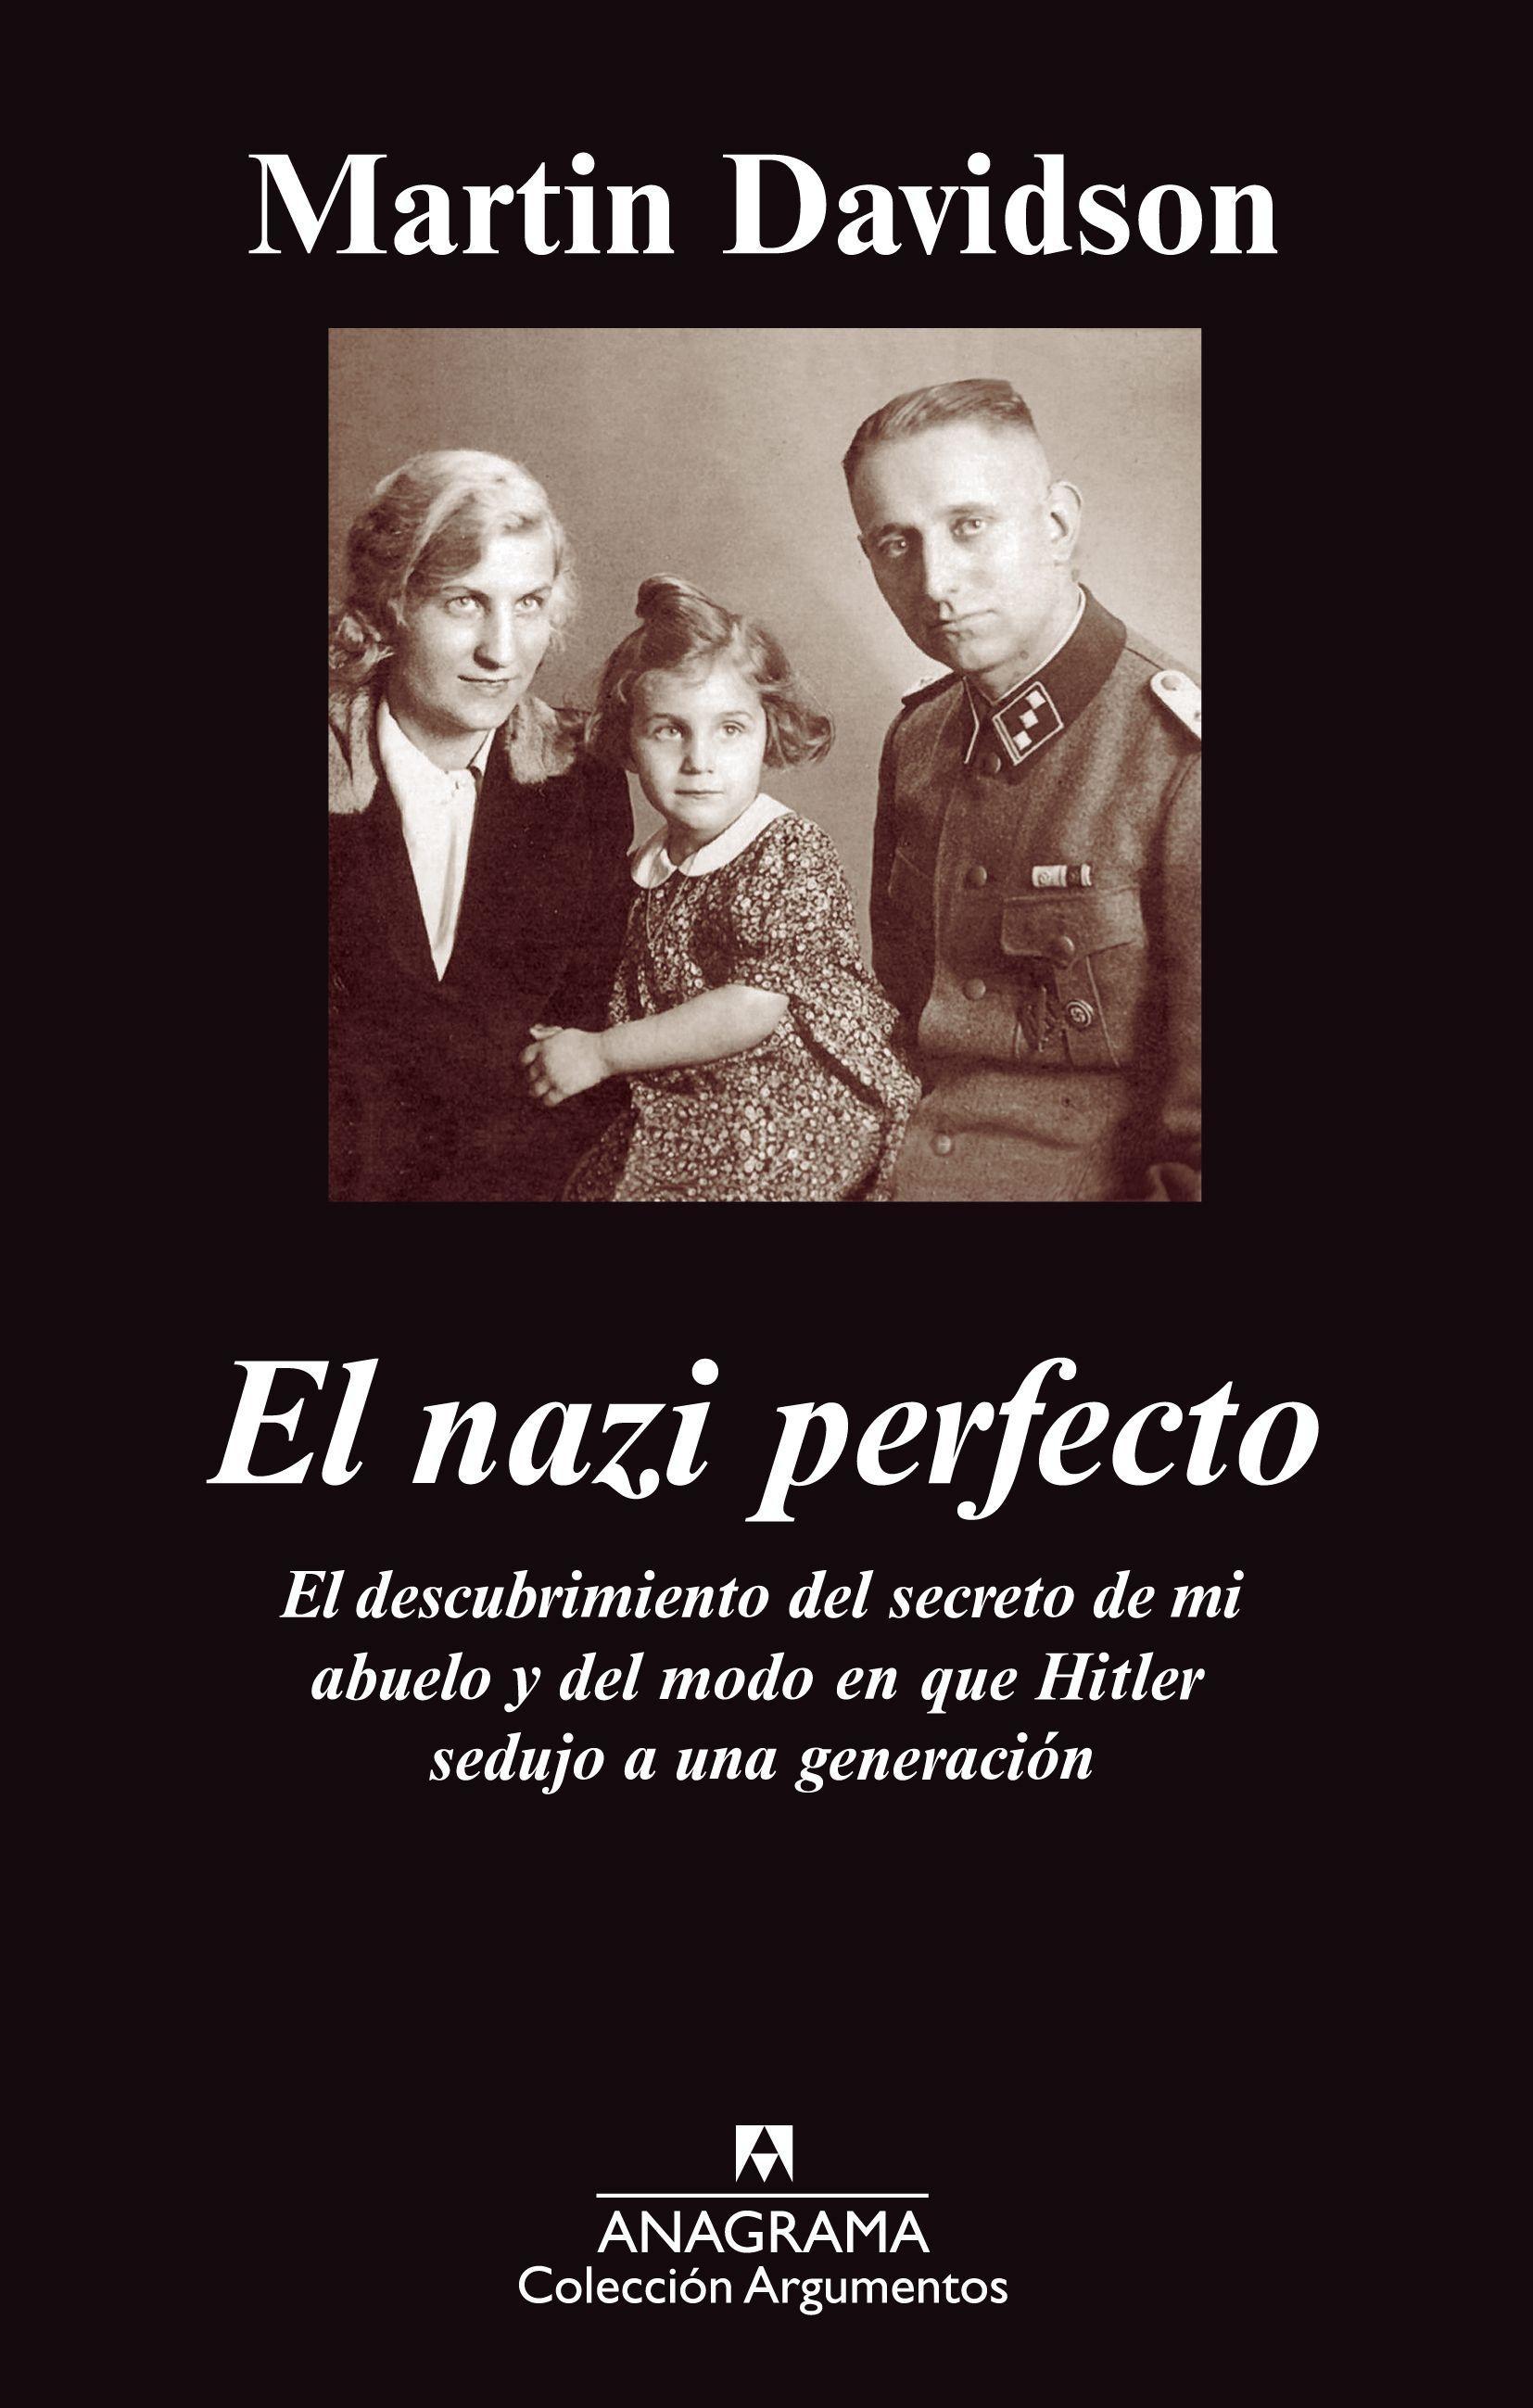 Nazi Perfecto, El "El descubrimiento del secreto de mi abuelo y del modo en que Hit". 